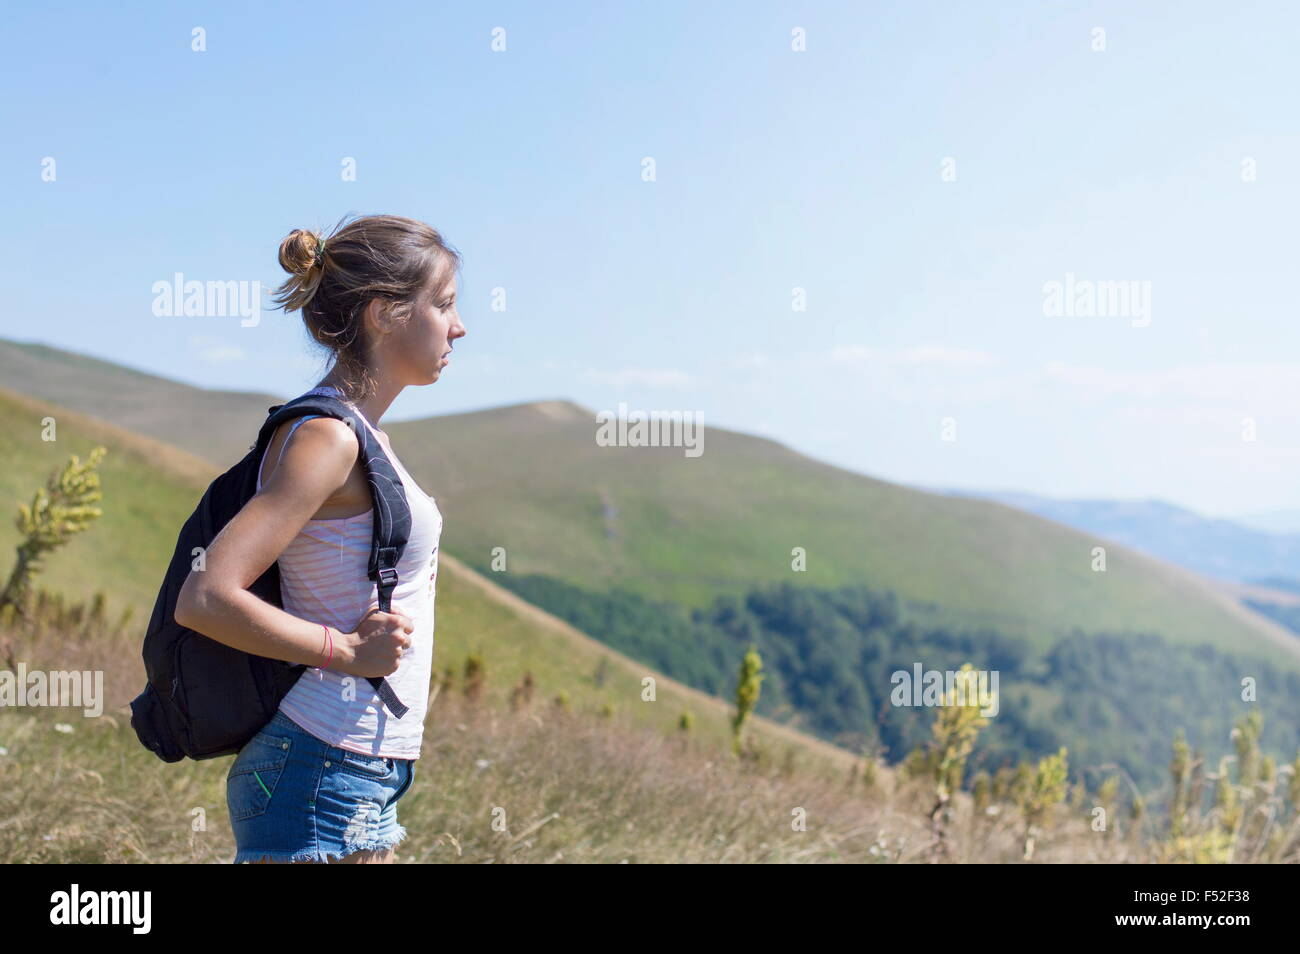 Joven, atractiva chica con una mochila en la espalda, de pie en la montaña. Praderas verdes y montañas majestuosas en el backgr Foto de stock